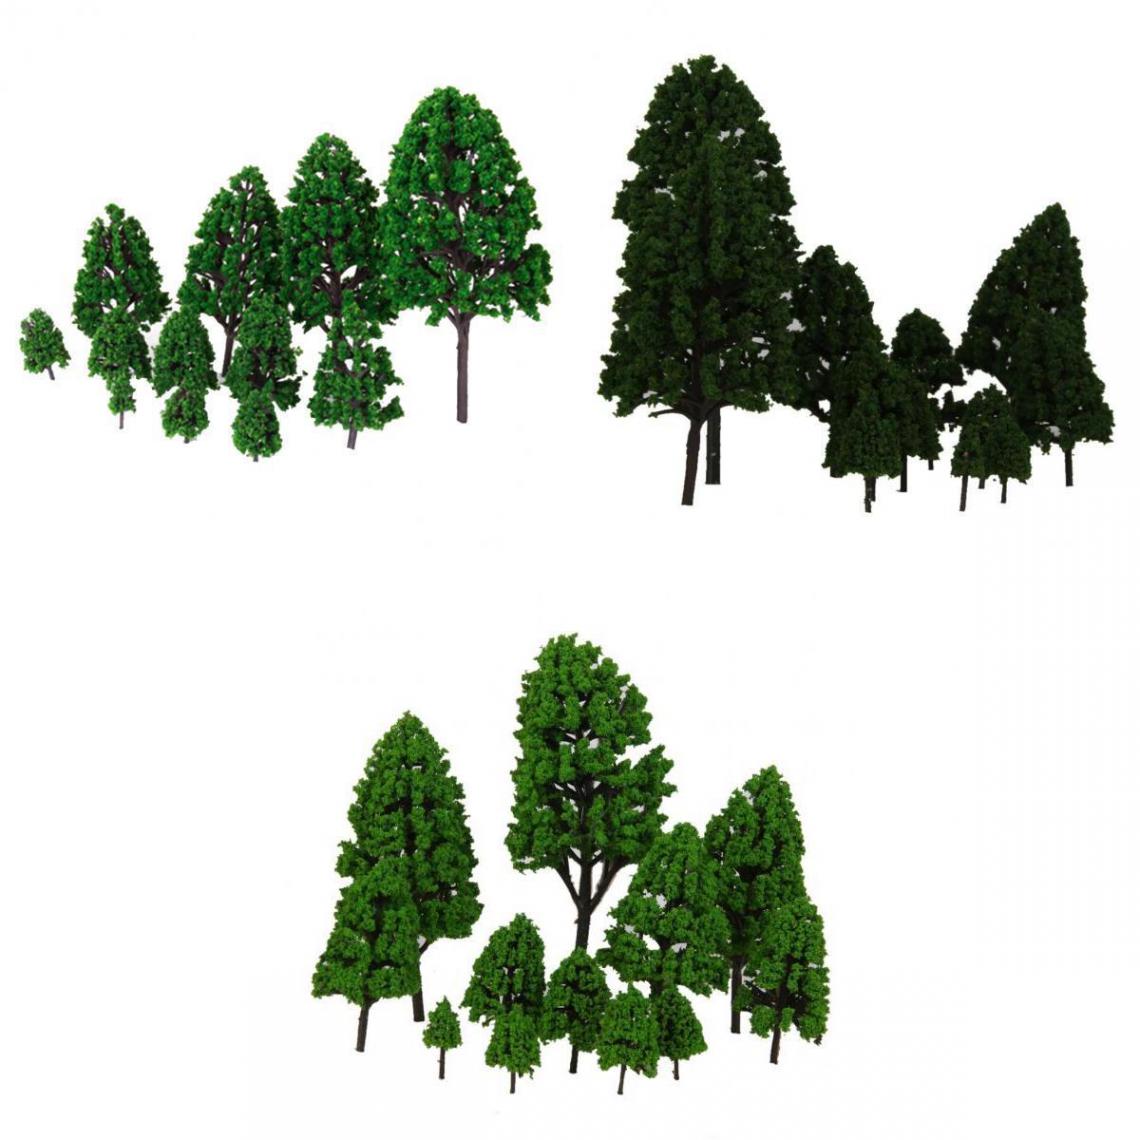 marque generique - 36pcs architecture paysage modèle arbres train chemin de fer paysage HO OO échelle - Accessoires maquettes